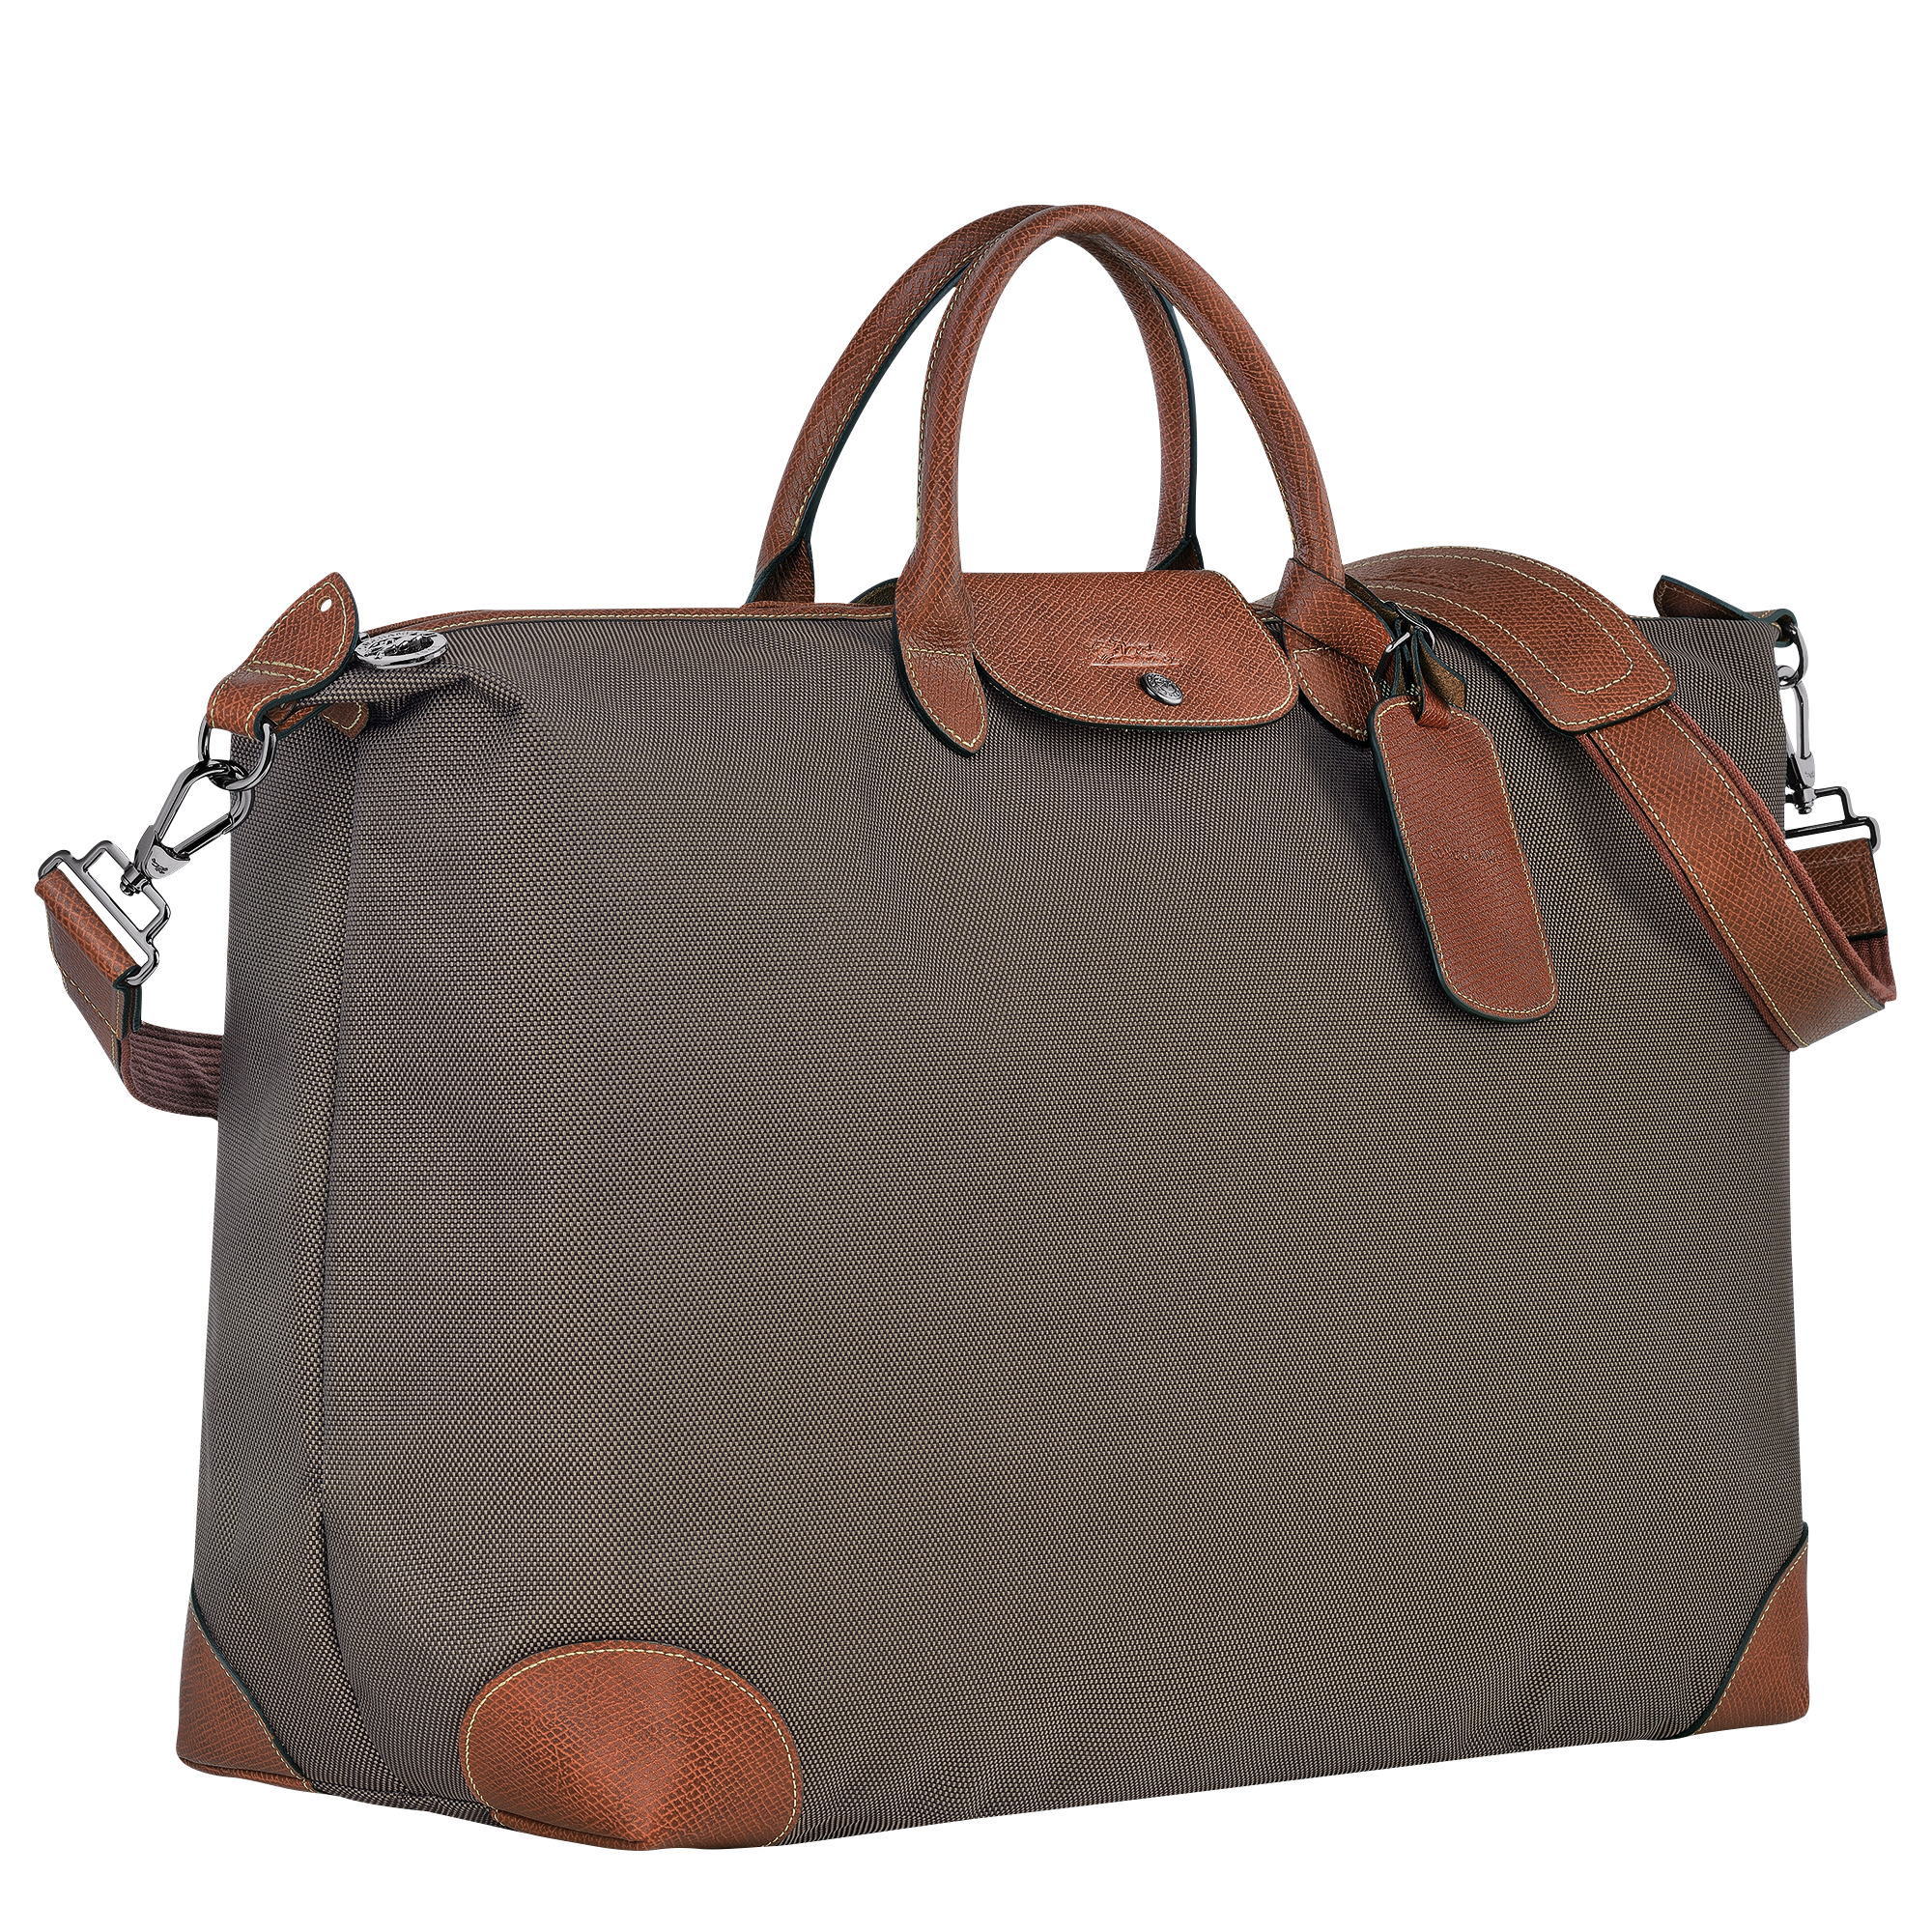 Longchamp Le Pliage Extra Large XL Travel Bag Review, L'Original